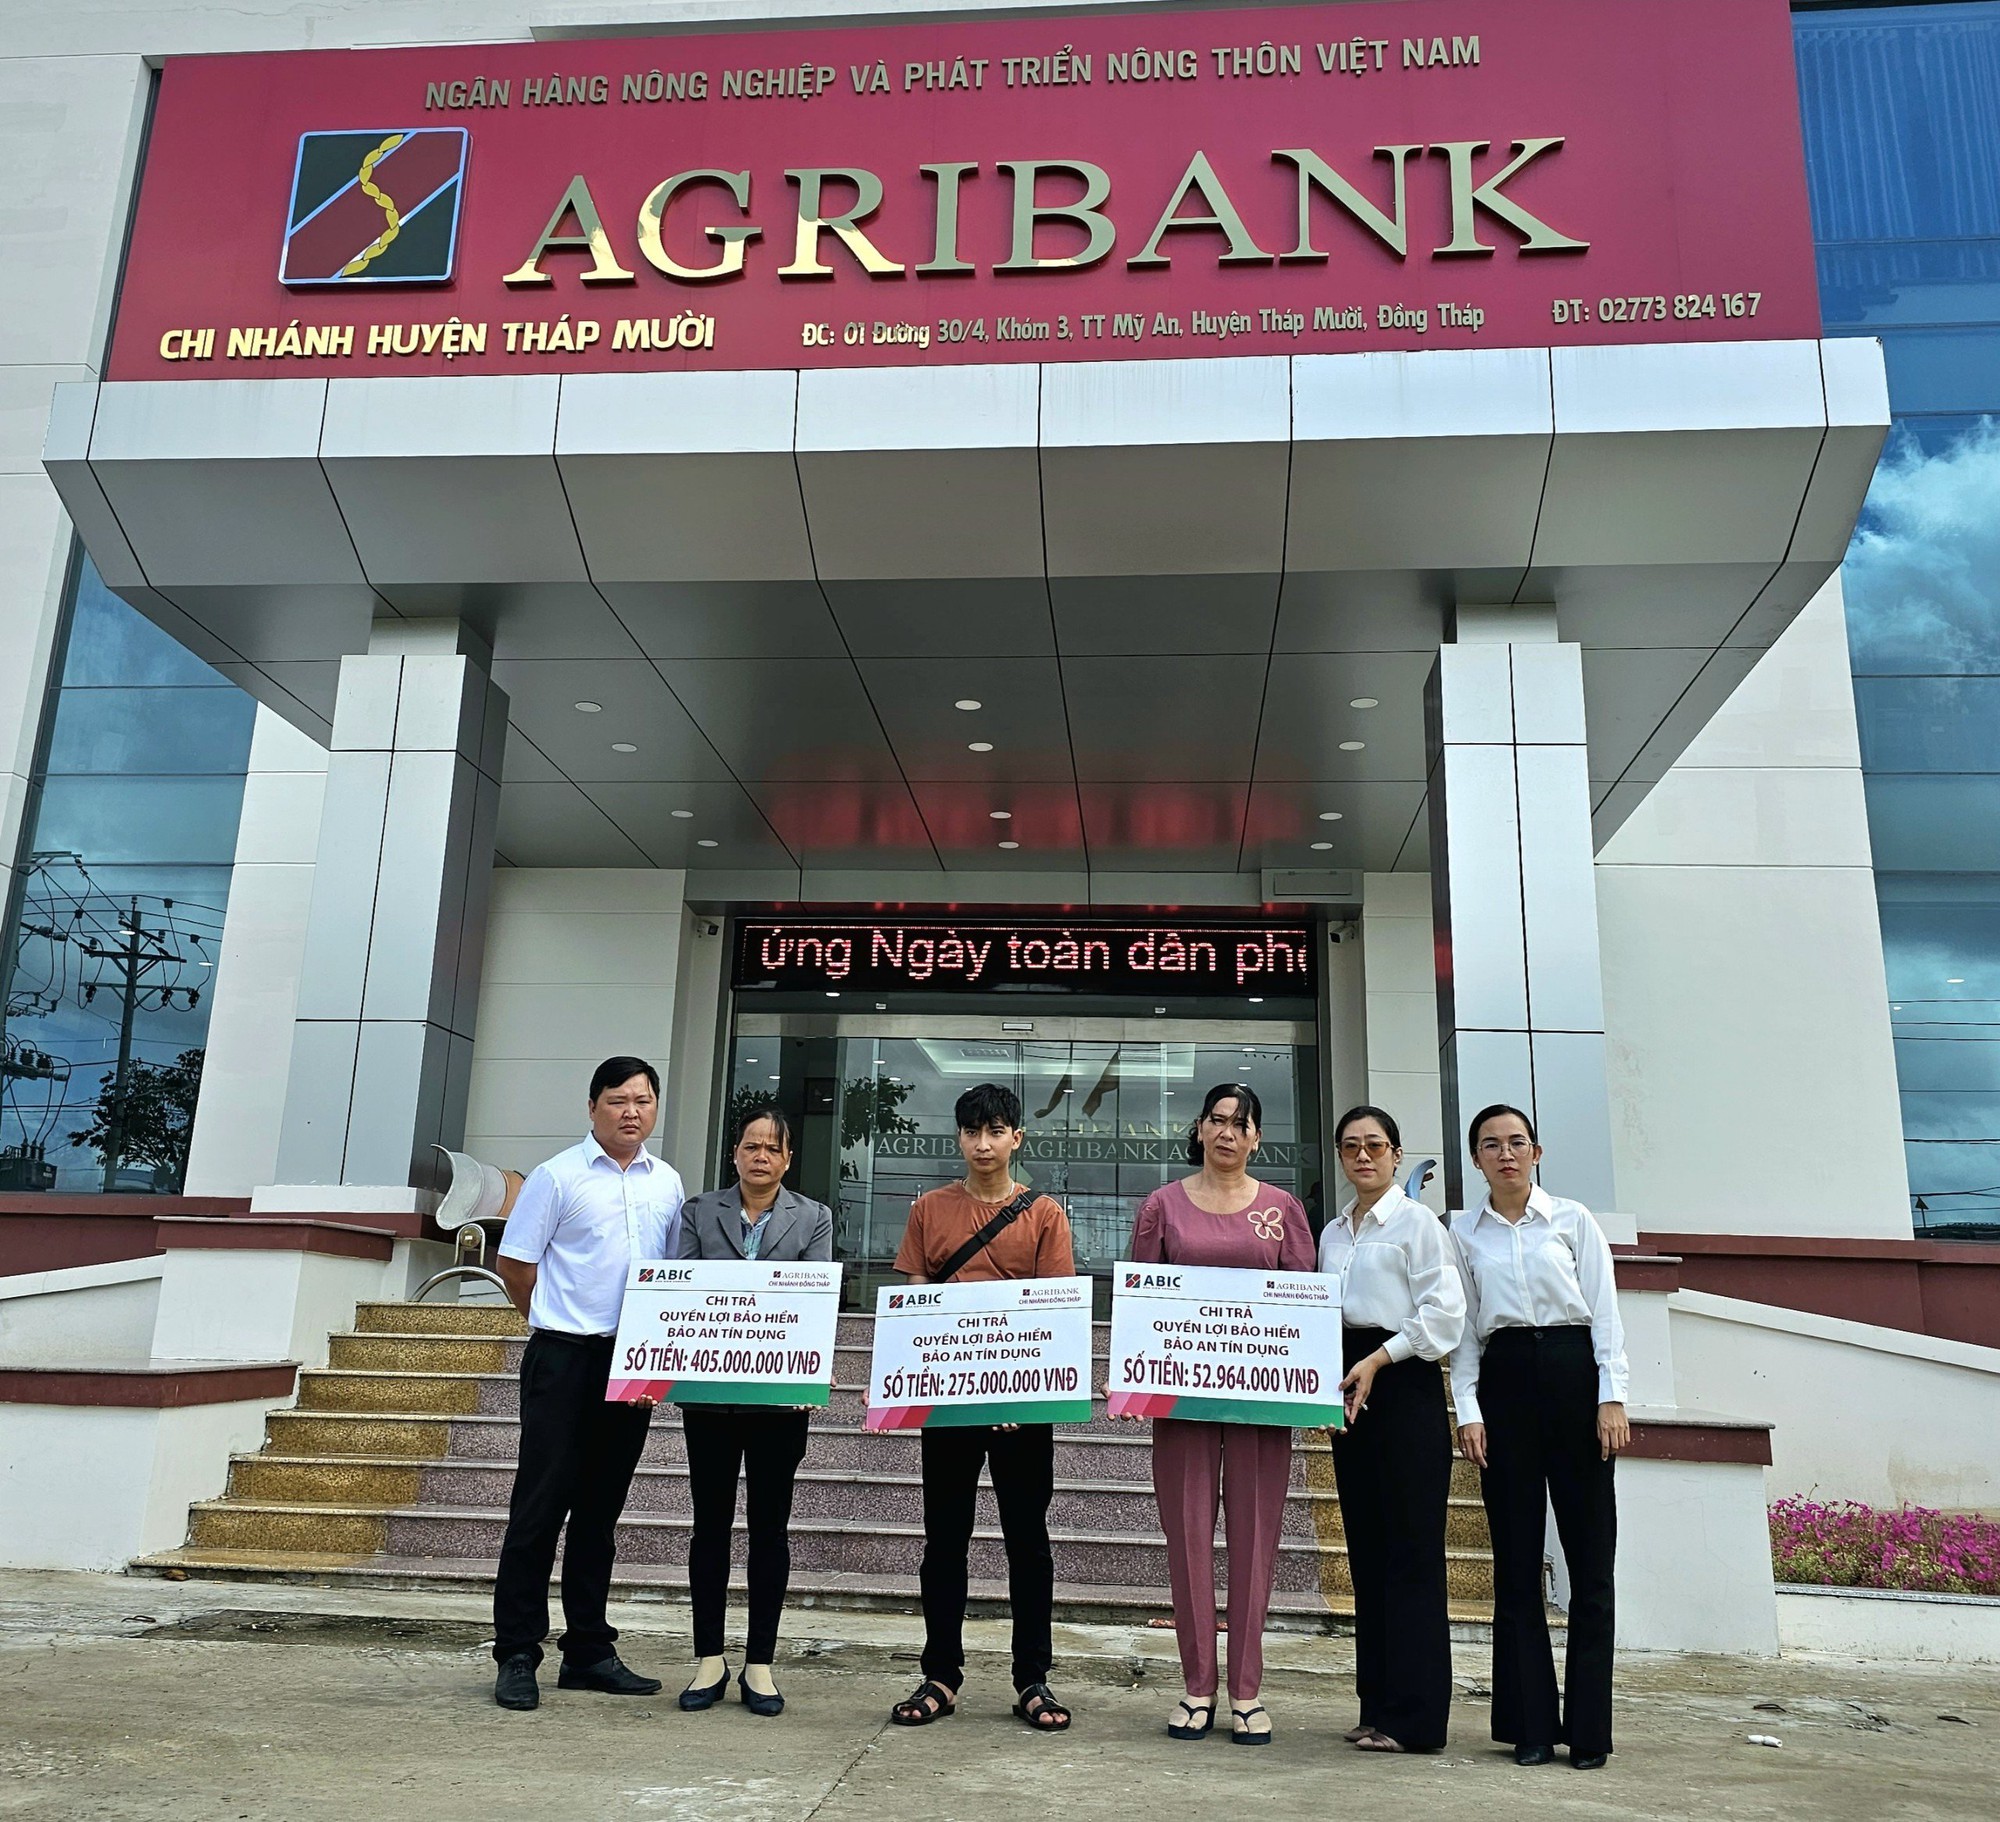 Bảo hiểm Agribank Cần Thơ chi trả quyền lợi Bảo an tín dụng hơn 732 triệu đồng cho 3 khách hàng ở Đồng Tháp - Ảnh 1.